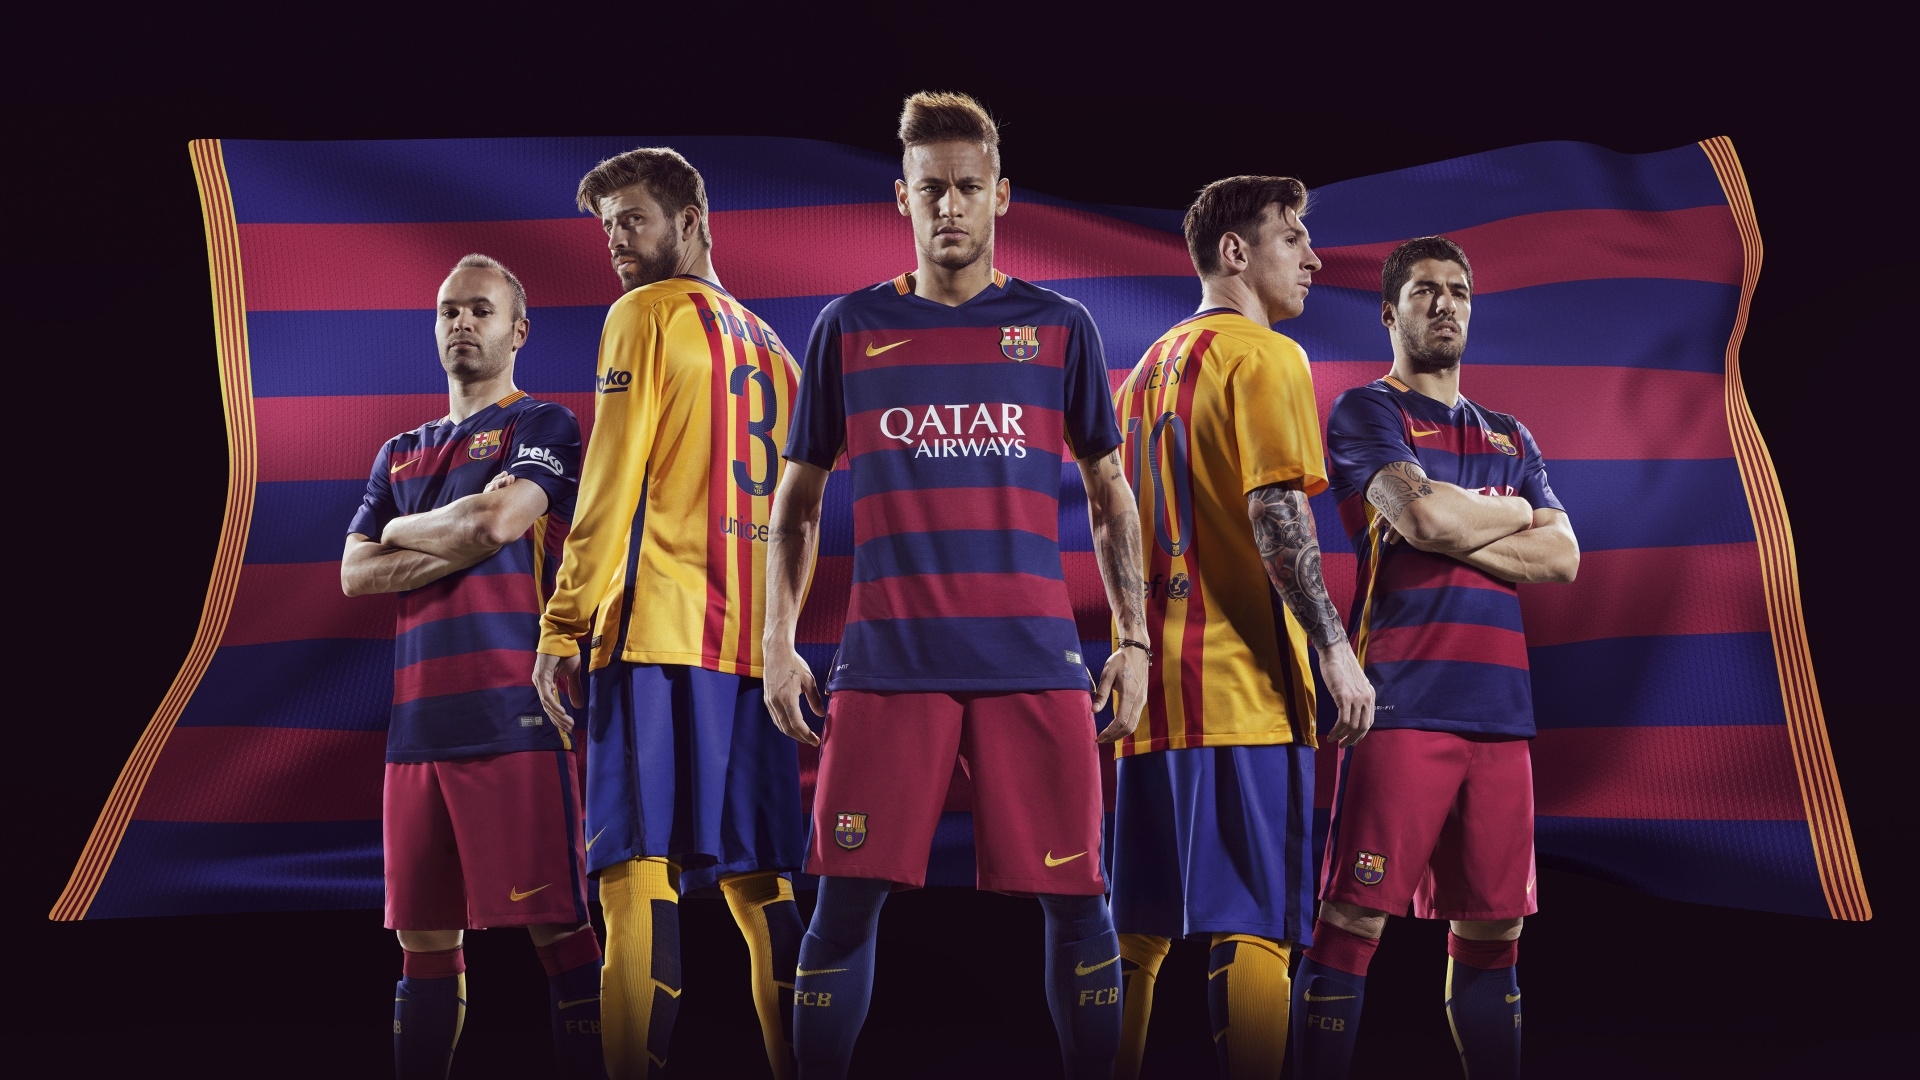 Barcelona Wallpaper Terbaru - Messi Neymar Suarez Pique - HD Wallpaper 